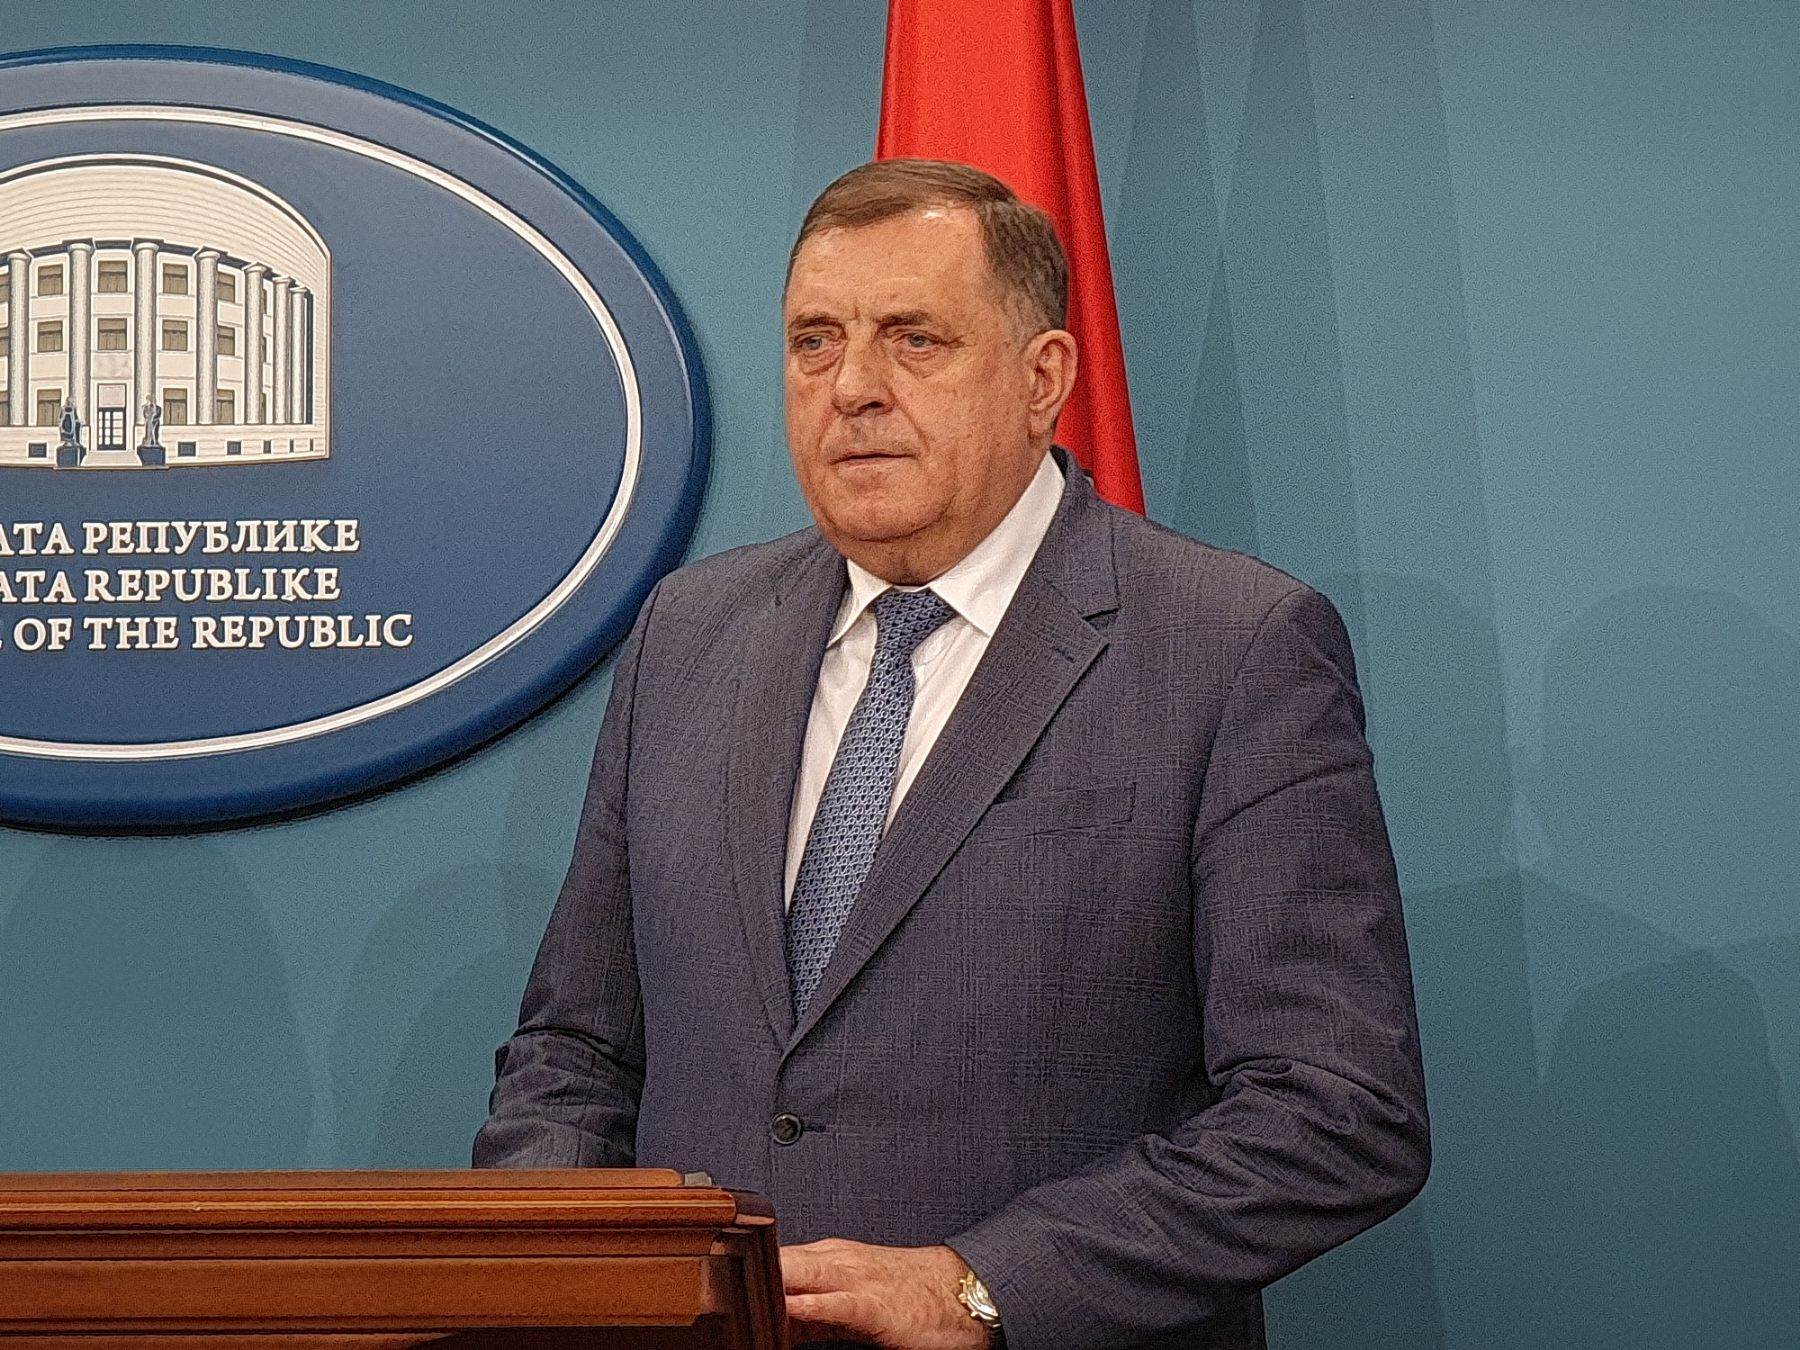  Dodik: Najava nadlijetanja američkih aviona provokacija i zastrašivanje 